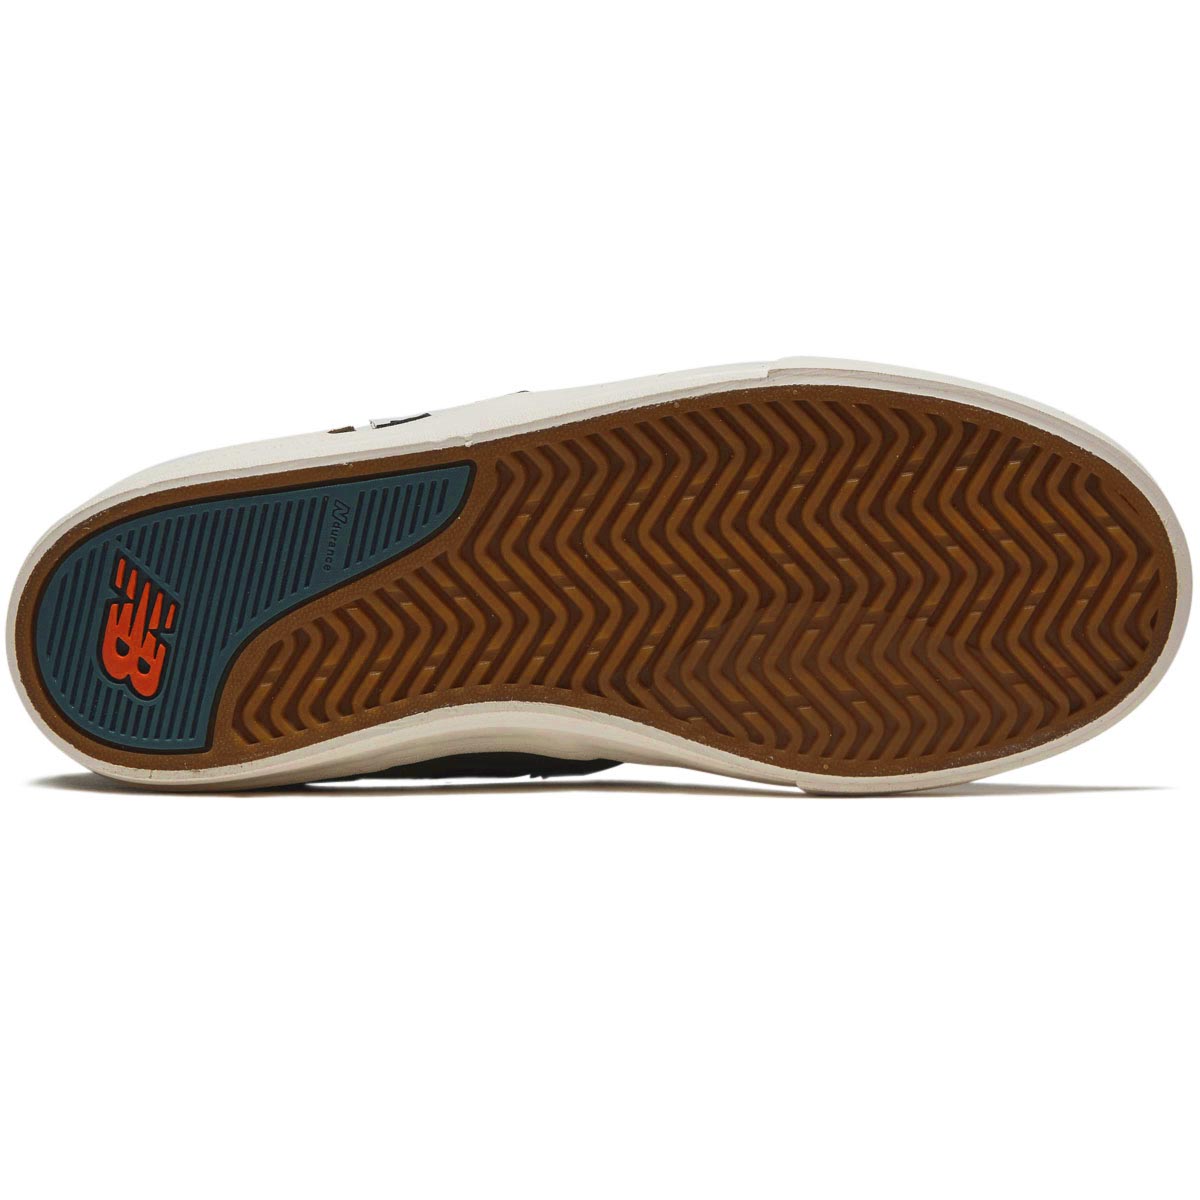 New Balance 306 Foy Shoes - Dark Olive/Spruce image 4